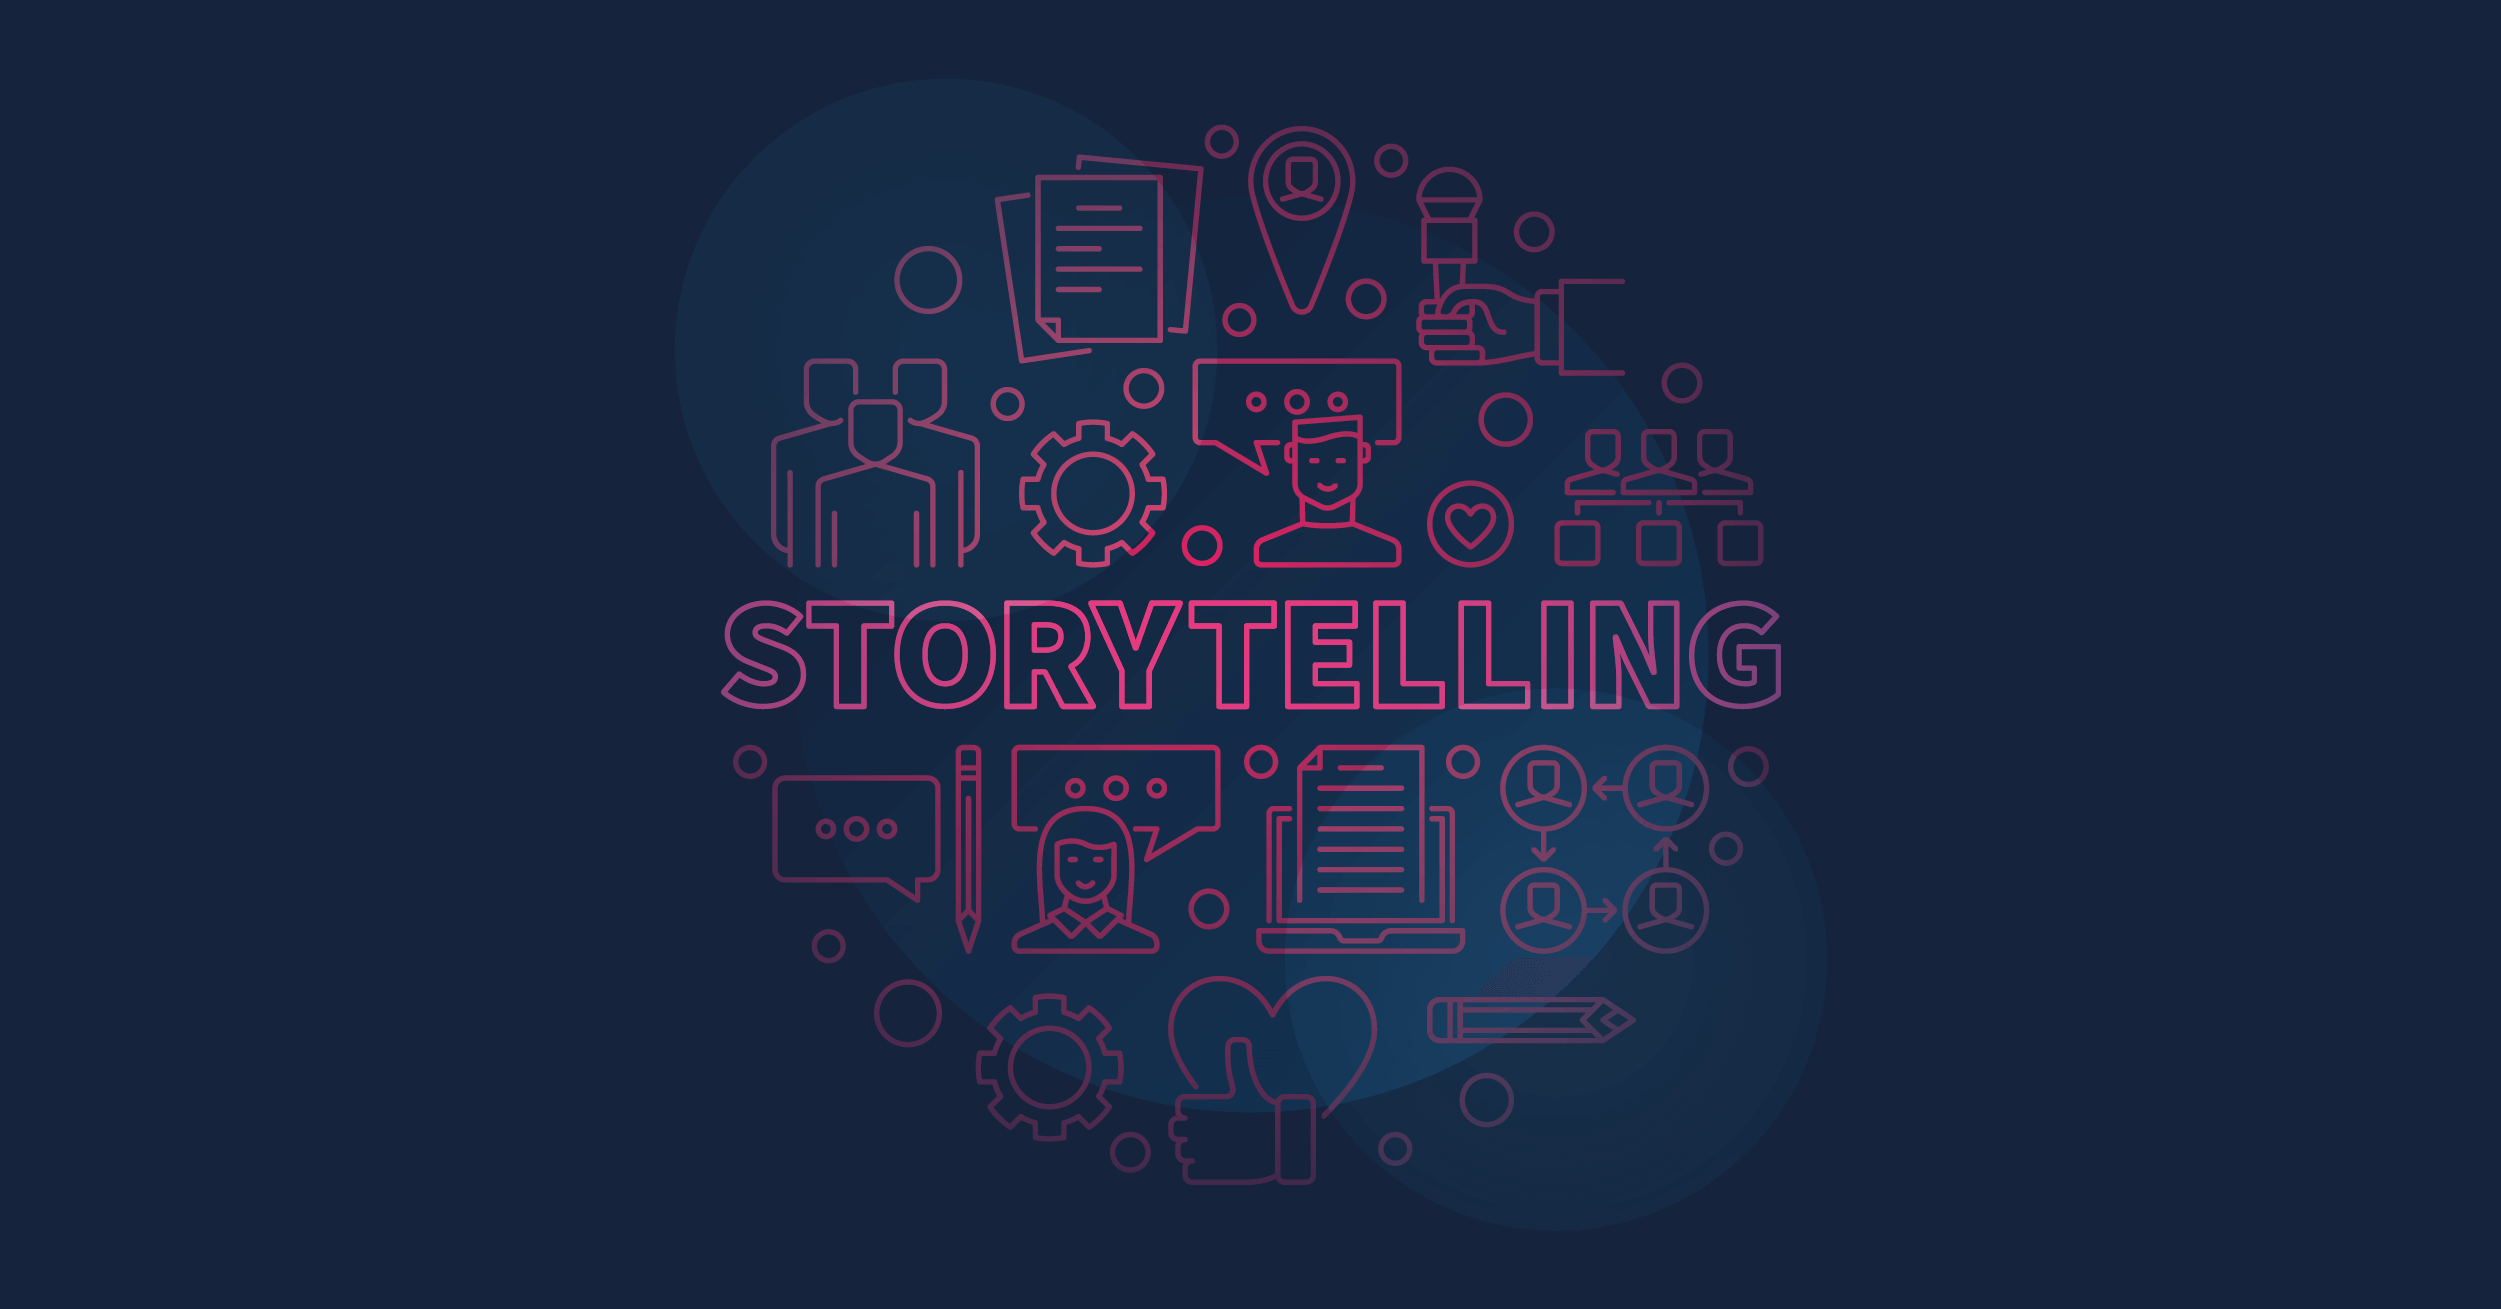 definição de storytelling